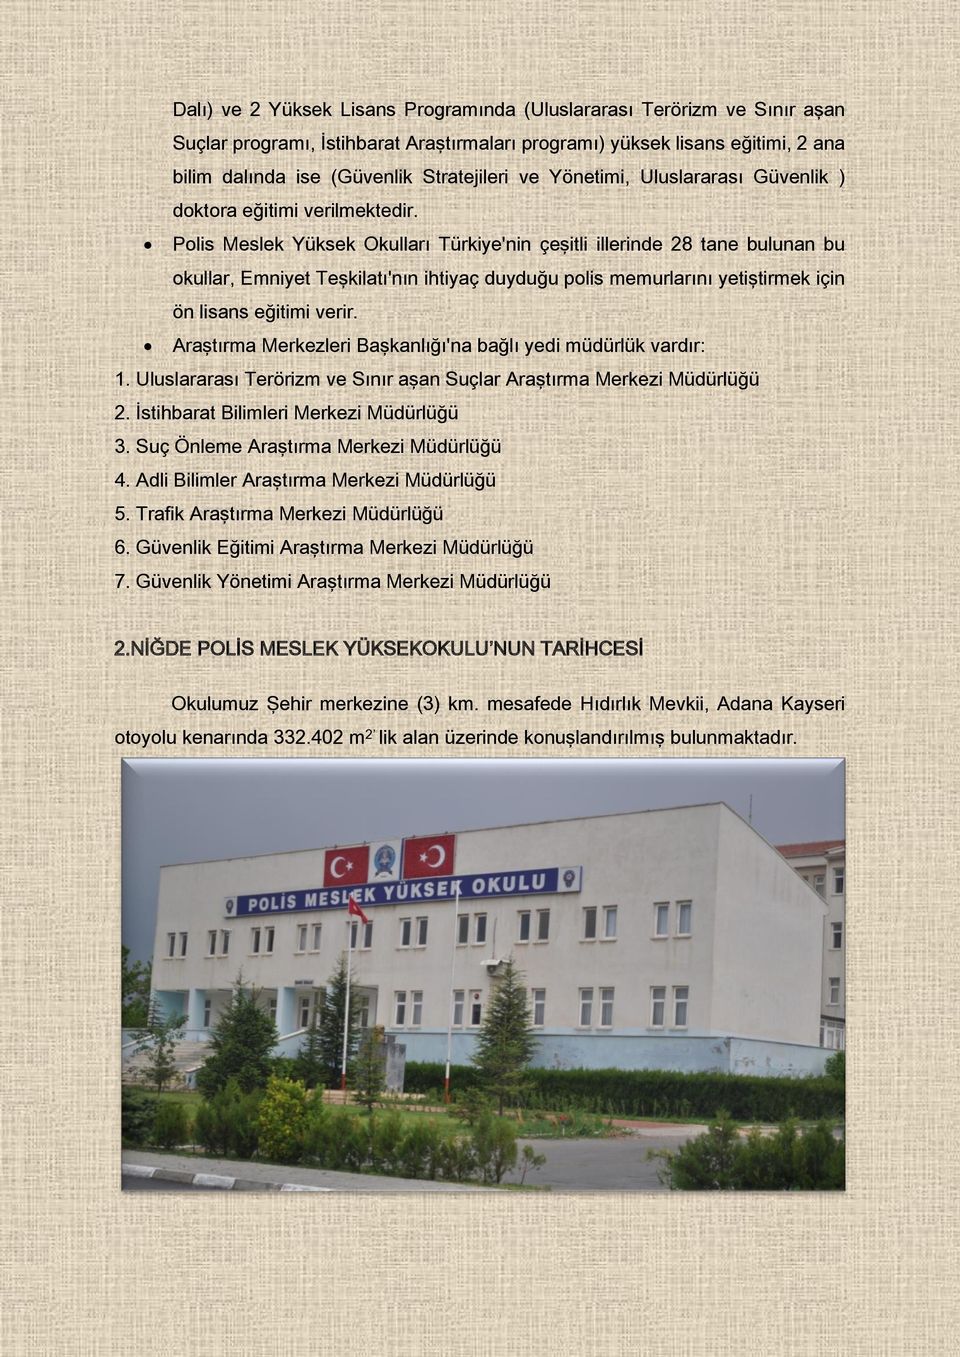 Polis Meslek Yüksek Okulları Türkiye'nin çeşitli illerinde 28 tane bulunan bu okullar, Emniyet Teşkilatı'nın ihtiyaç duyduğu polis memurlarını yetiştirmek için ön lisans eğitimi verir.